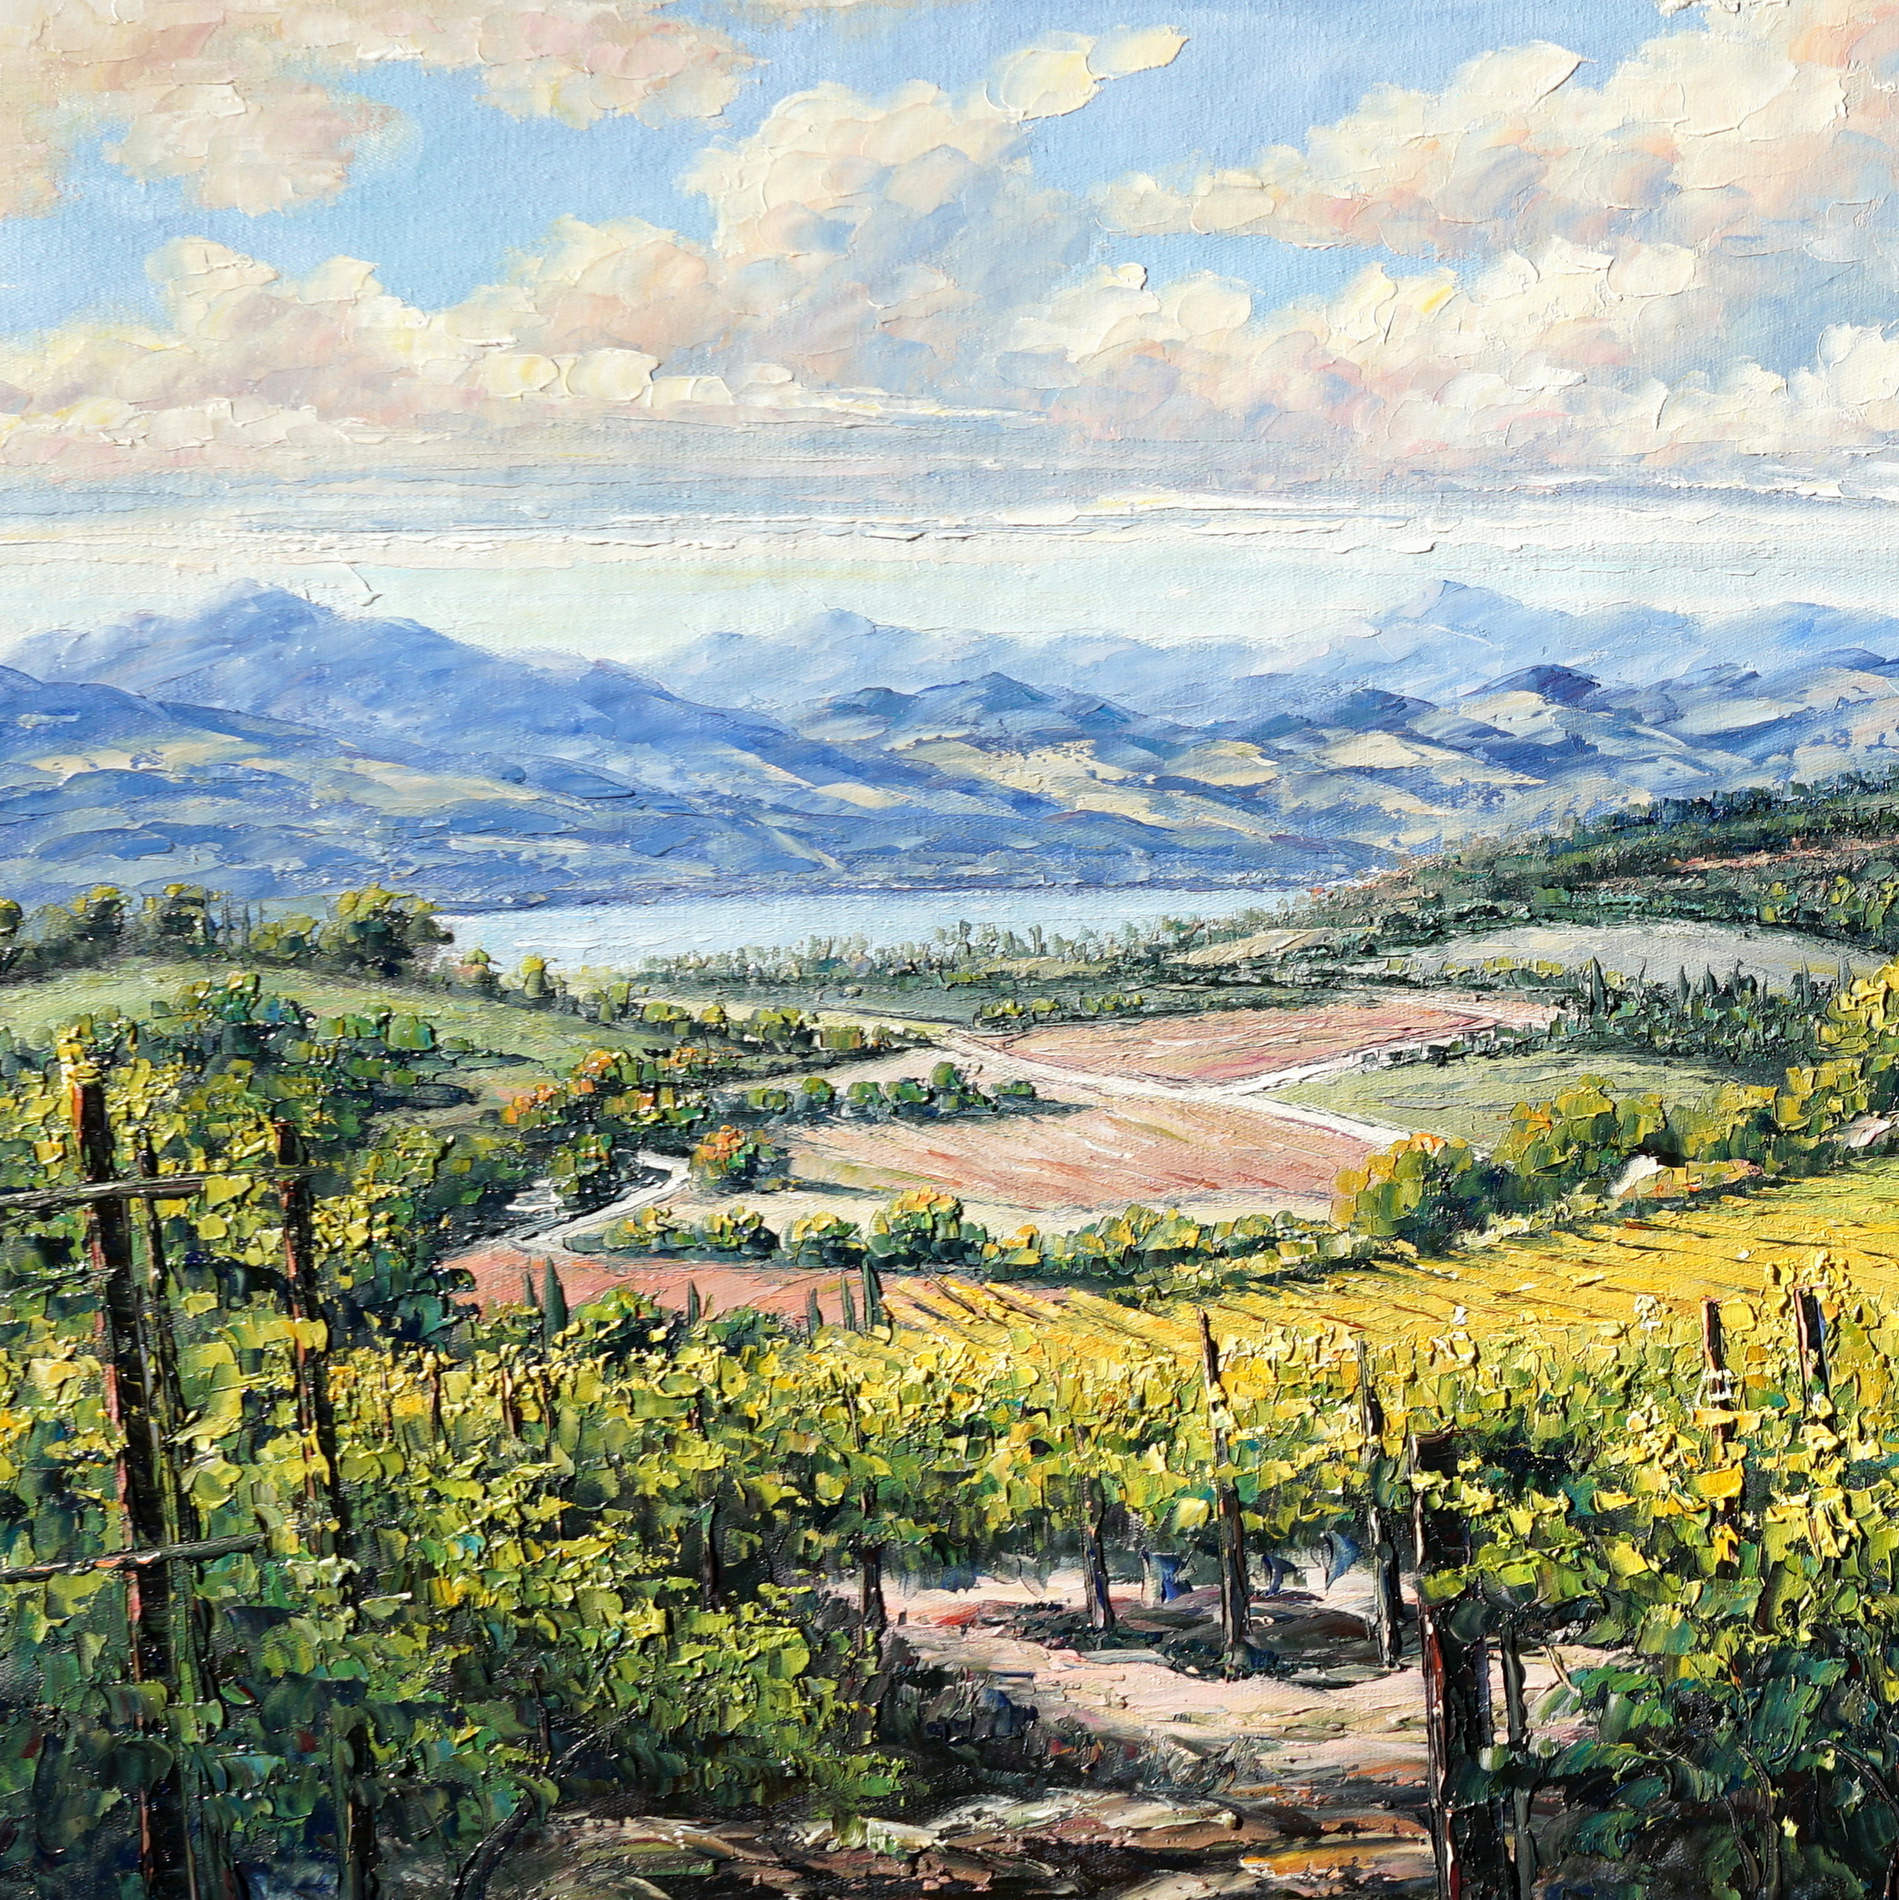 Vignobles des collines toscanes peintes à la main 60x120cm